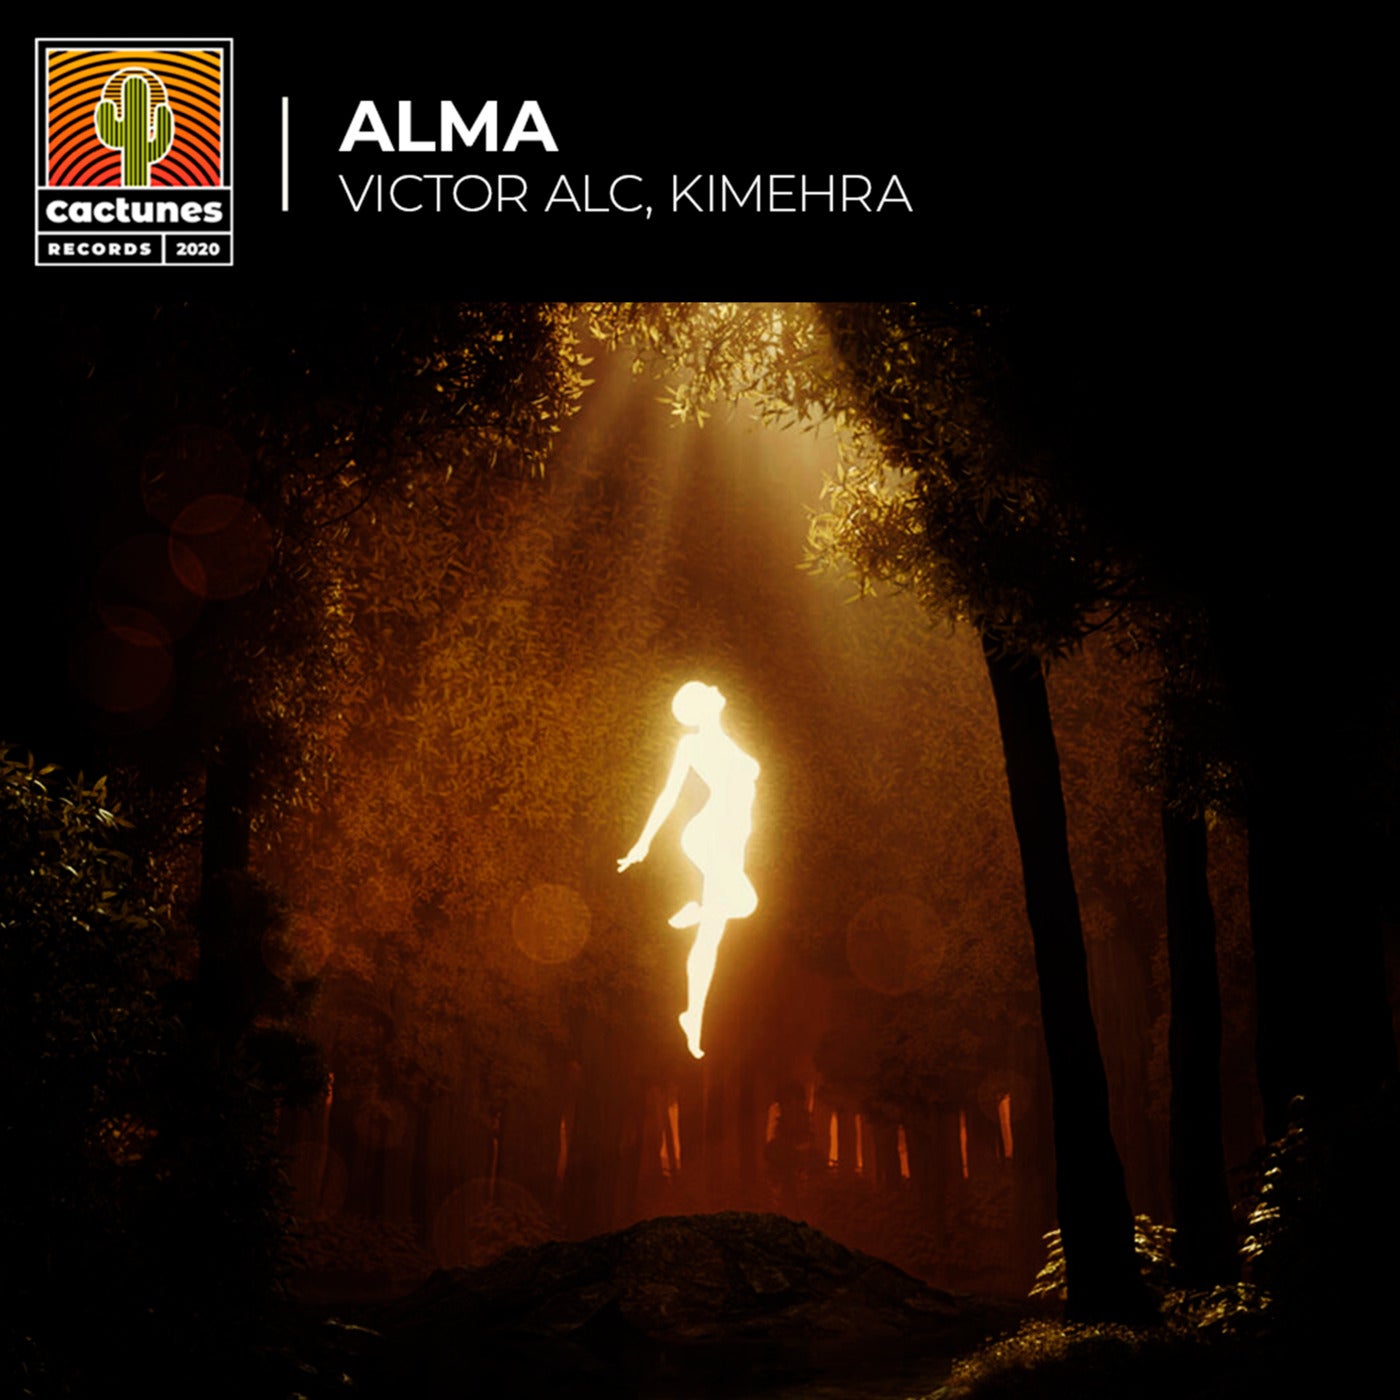 Cover - Kimehra, Victor Alc - Alma (Original Mix)